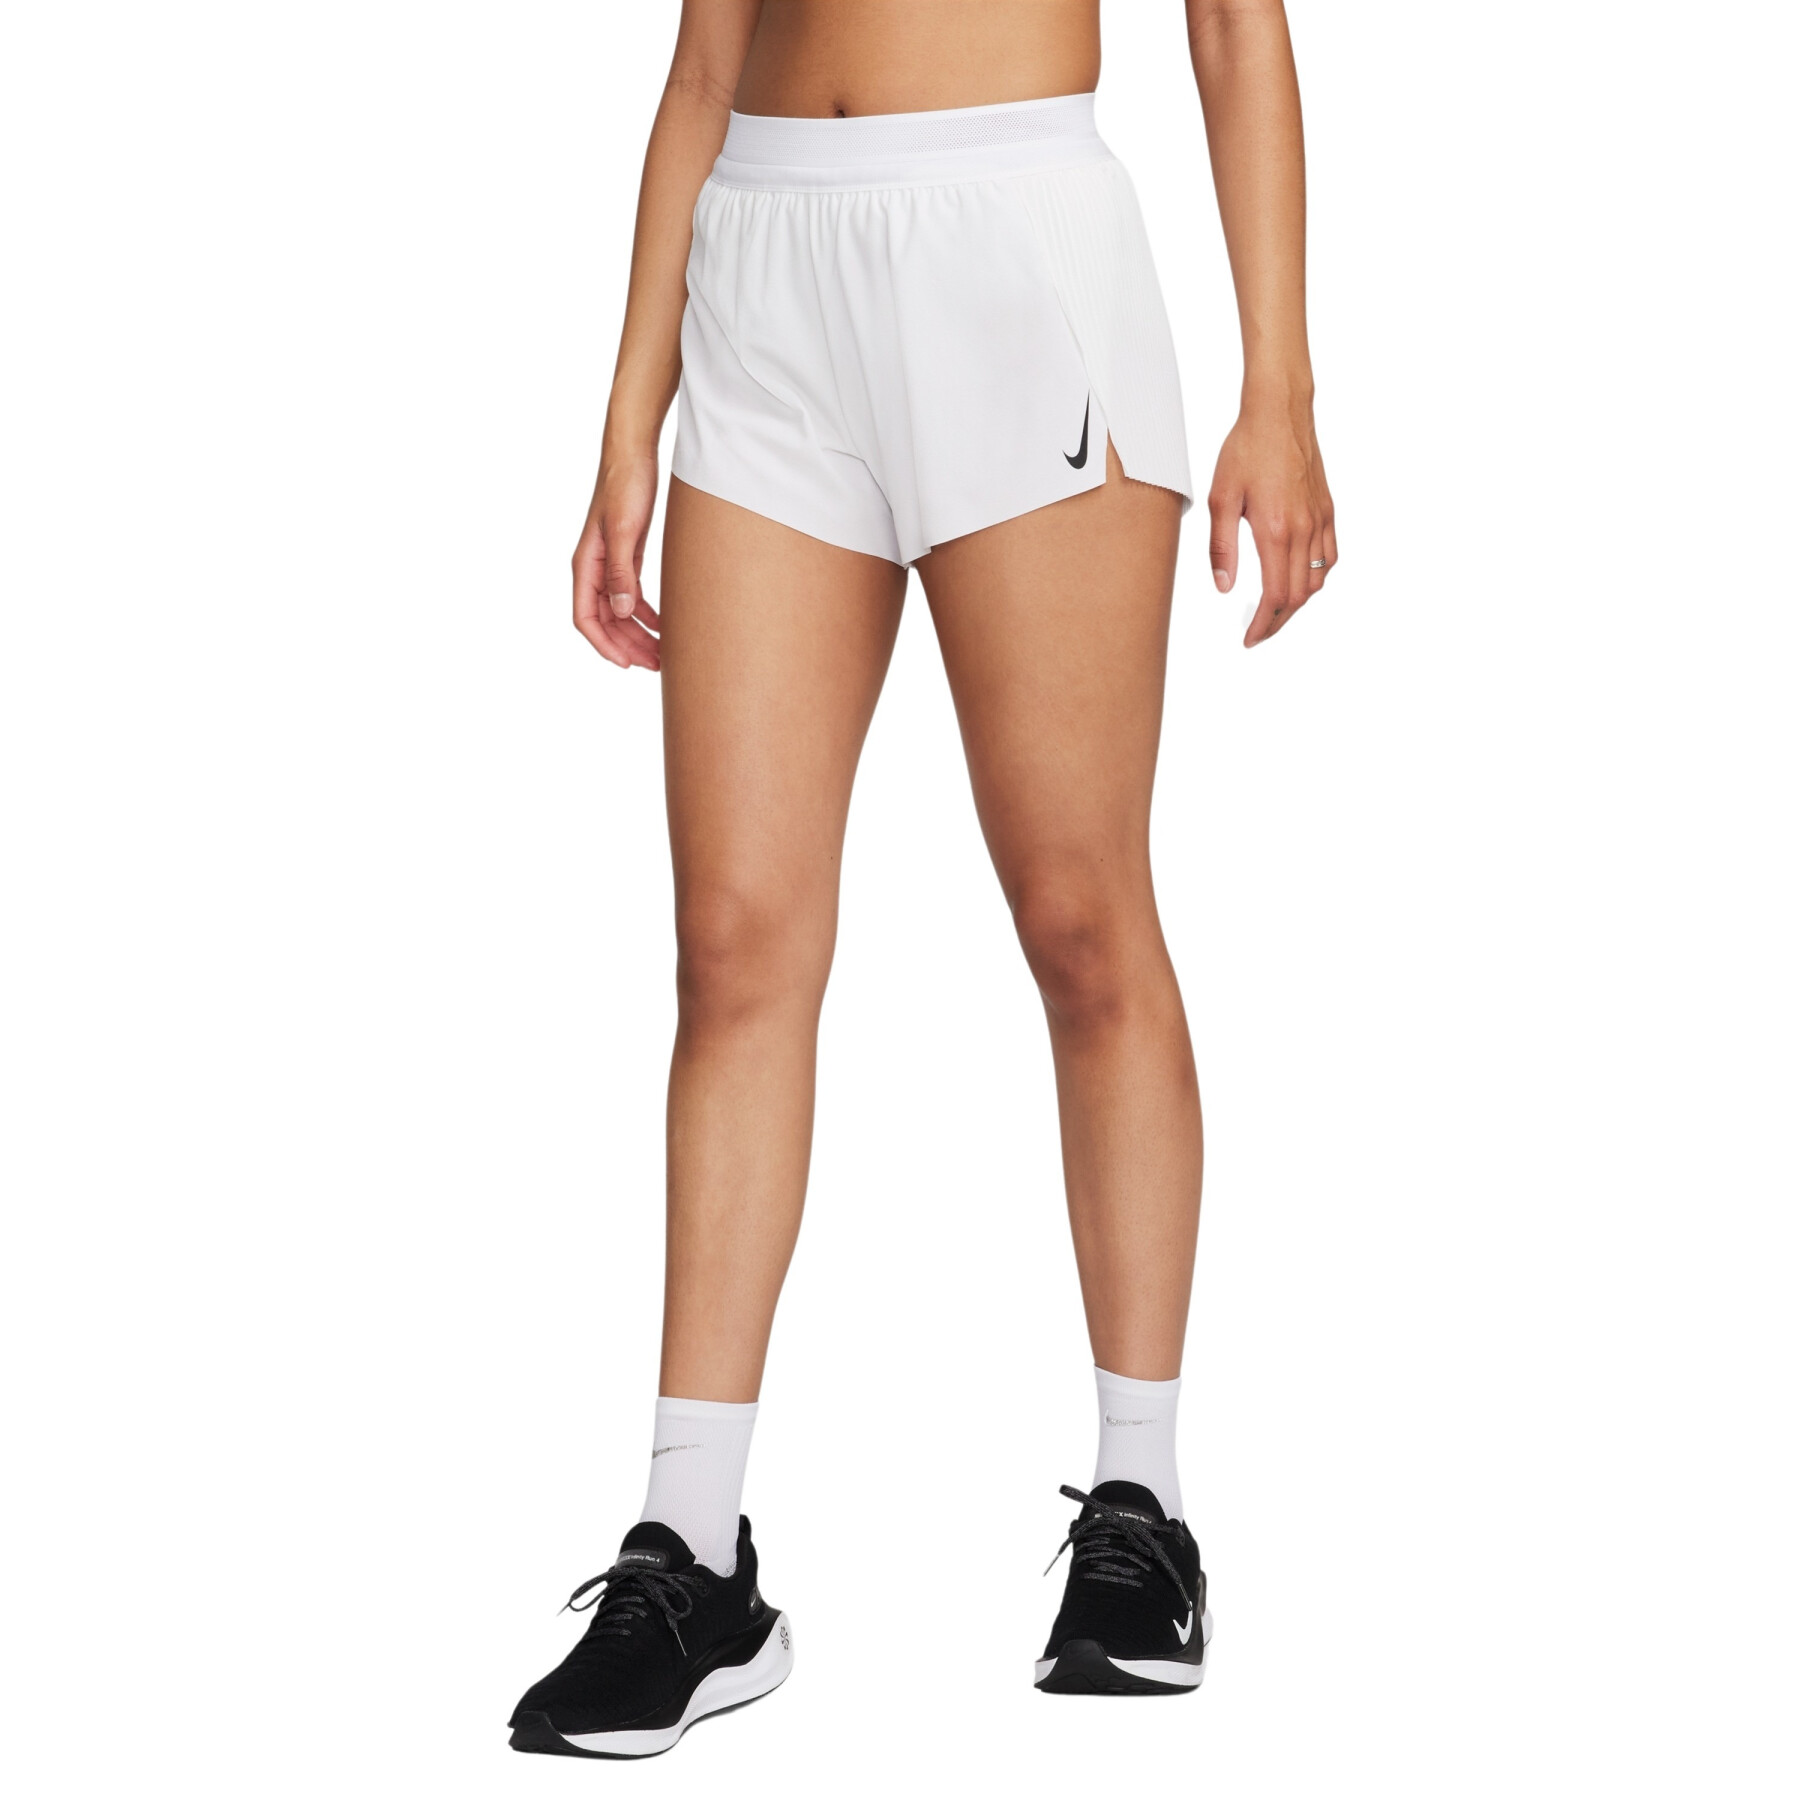 Halfhoge damesshort met geïntegreerde ondershort Nike AeroSwift Dri-FIT AD 8 cm